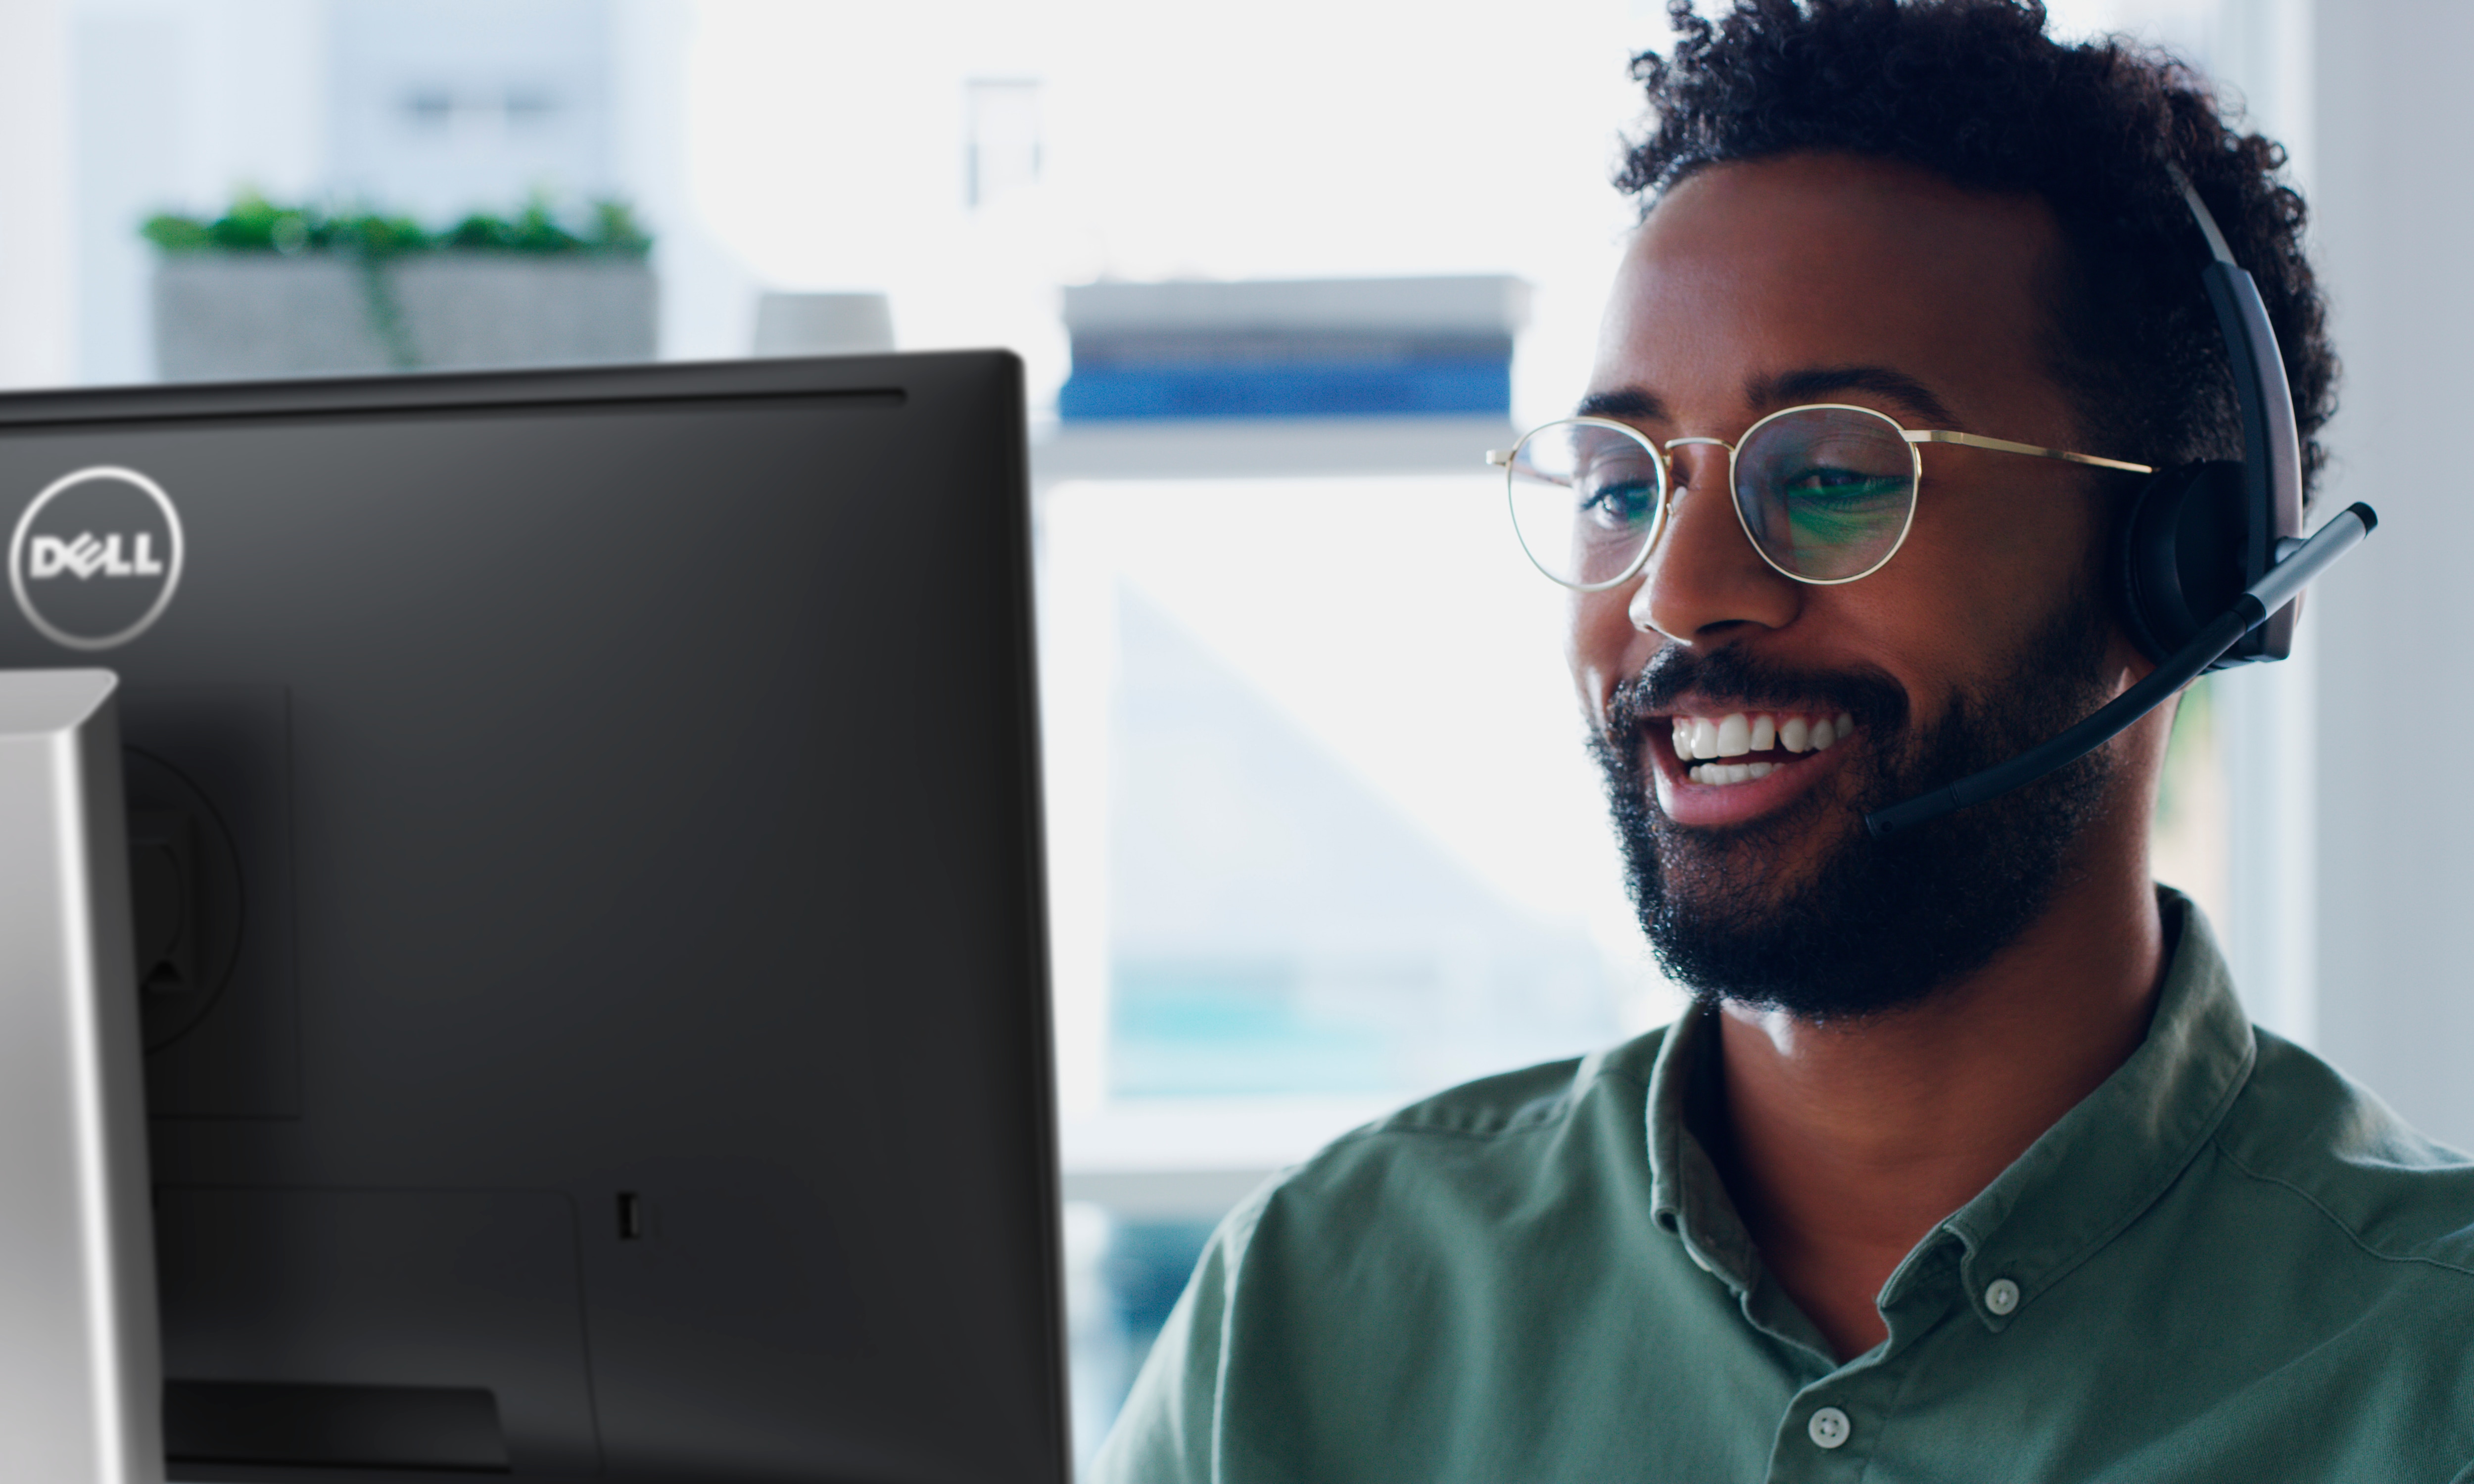 Bild eines lächelnden Mannes, der eine Brille sowie ein Headset auf dem Kopf trägt und einen Dell Monitor verwendet.